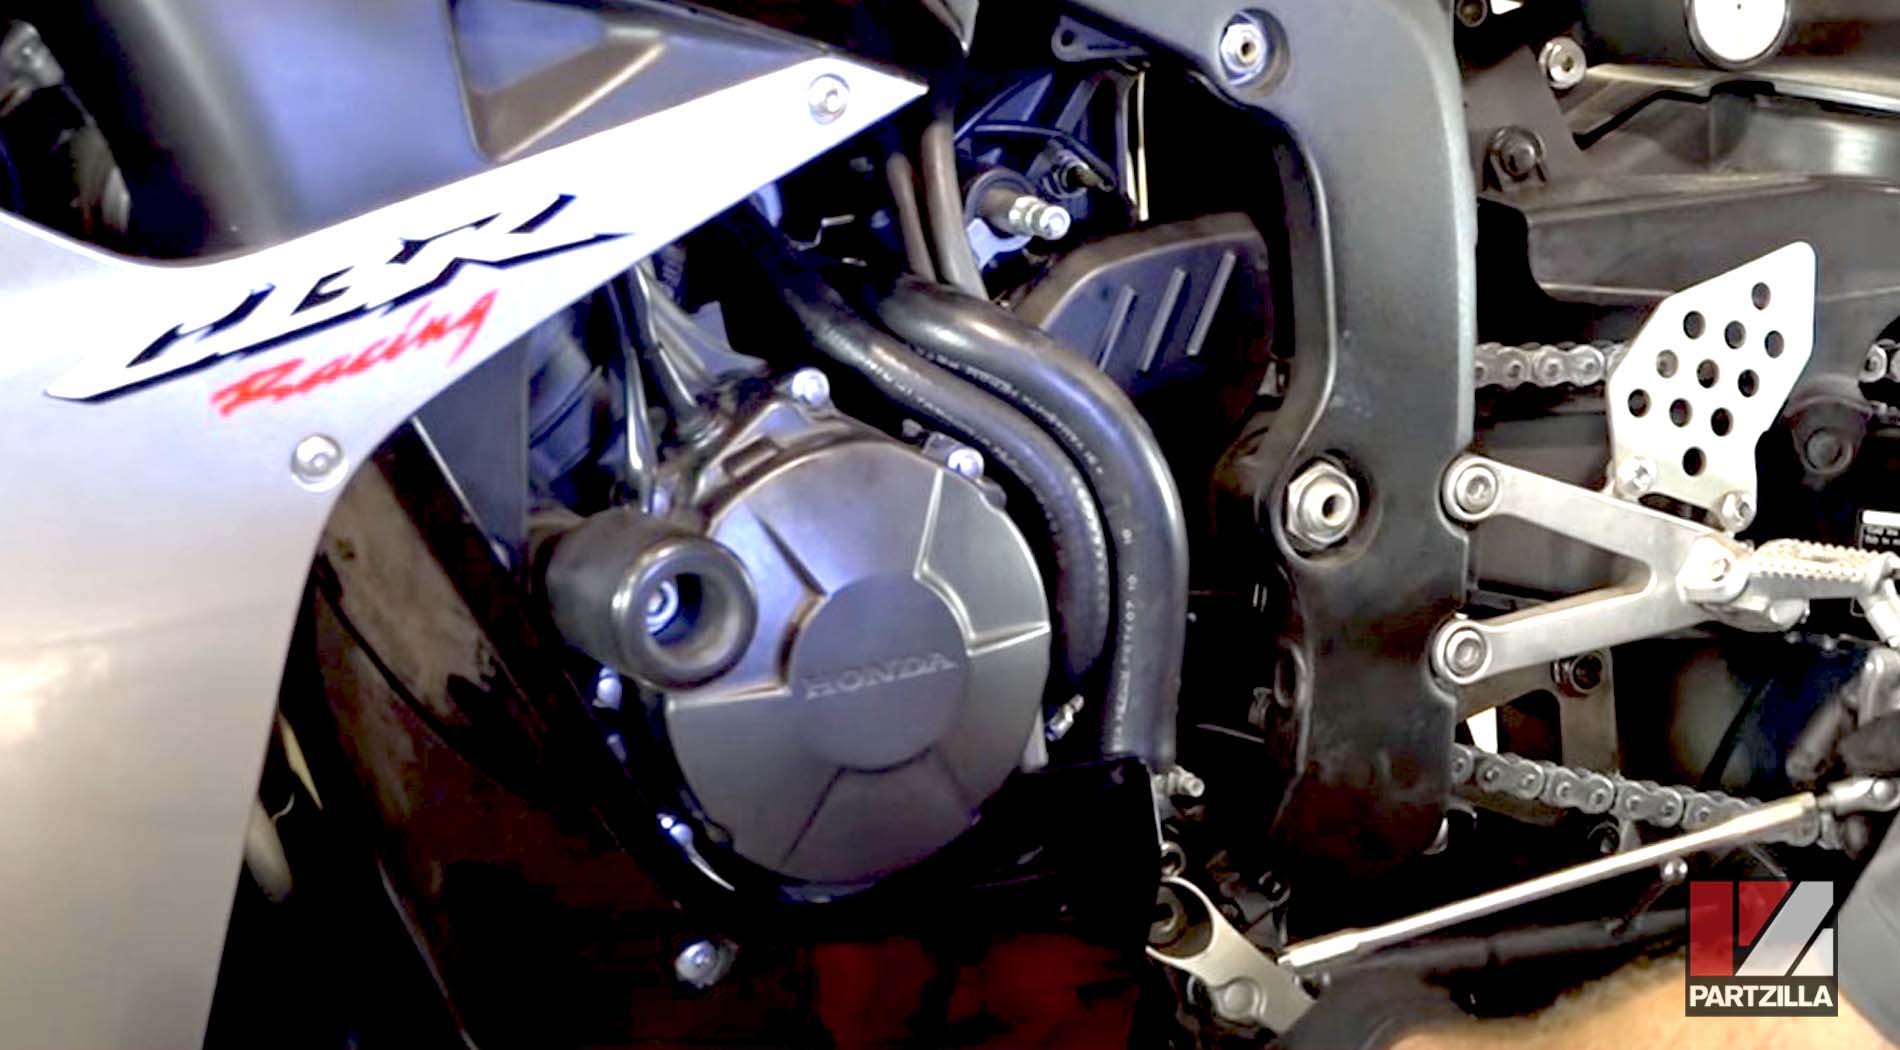 Honda CBR600 sprocket cover installation